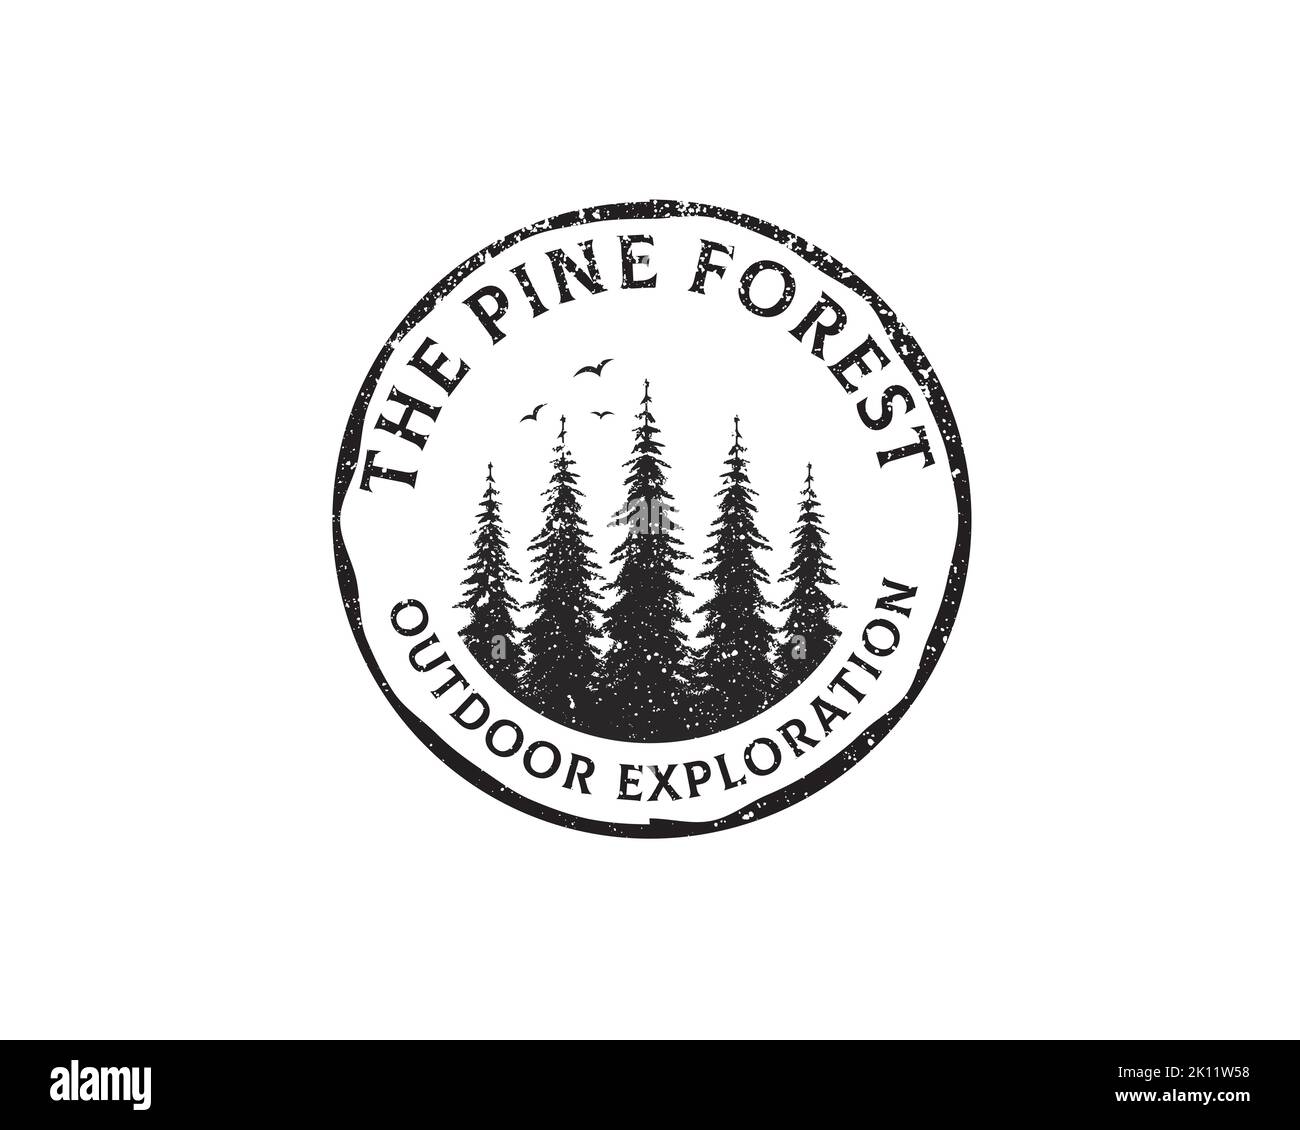 Étiquette portant le logo Emblem rond de Hemlock rétro rustique, Evergreen, Pines, Spruce, Cedar Trees Illustration de Vecteur